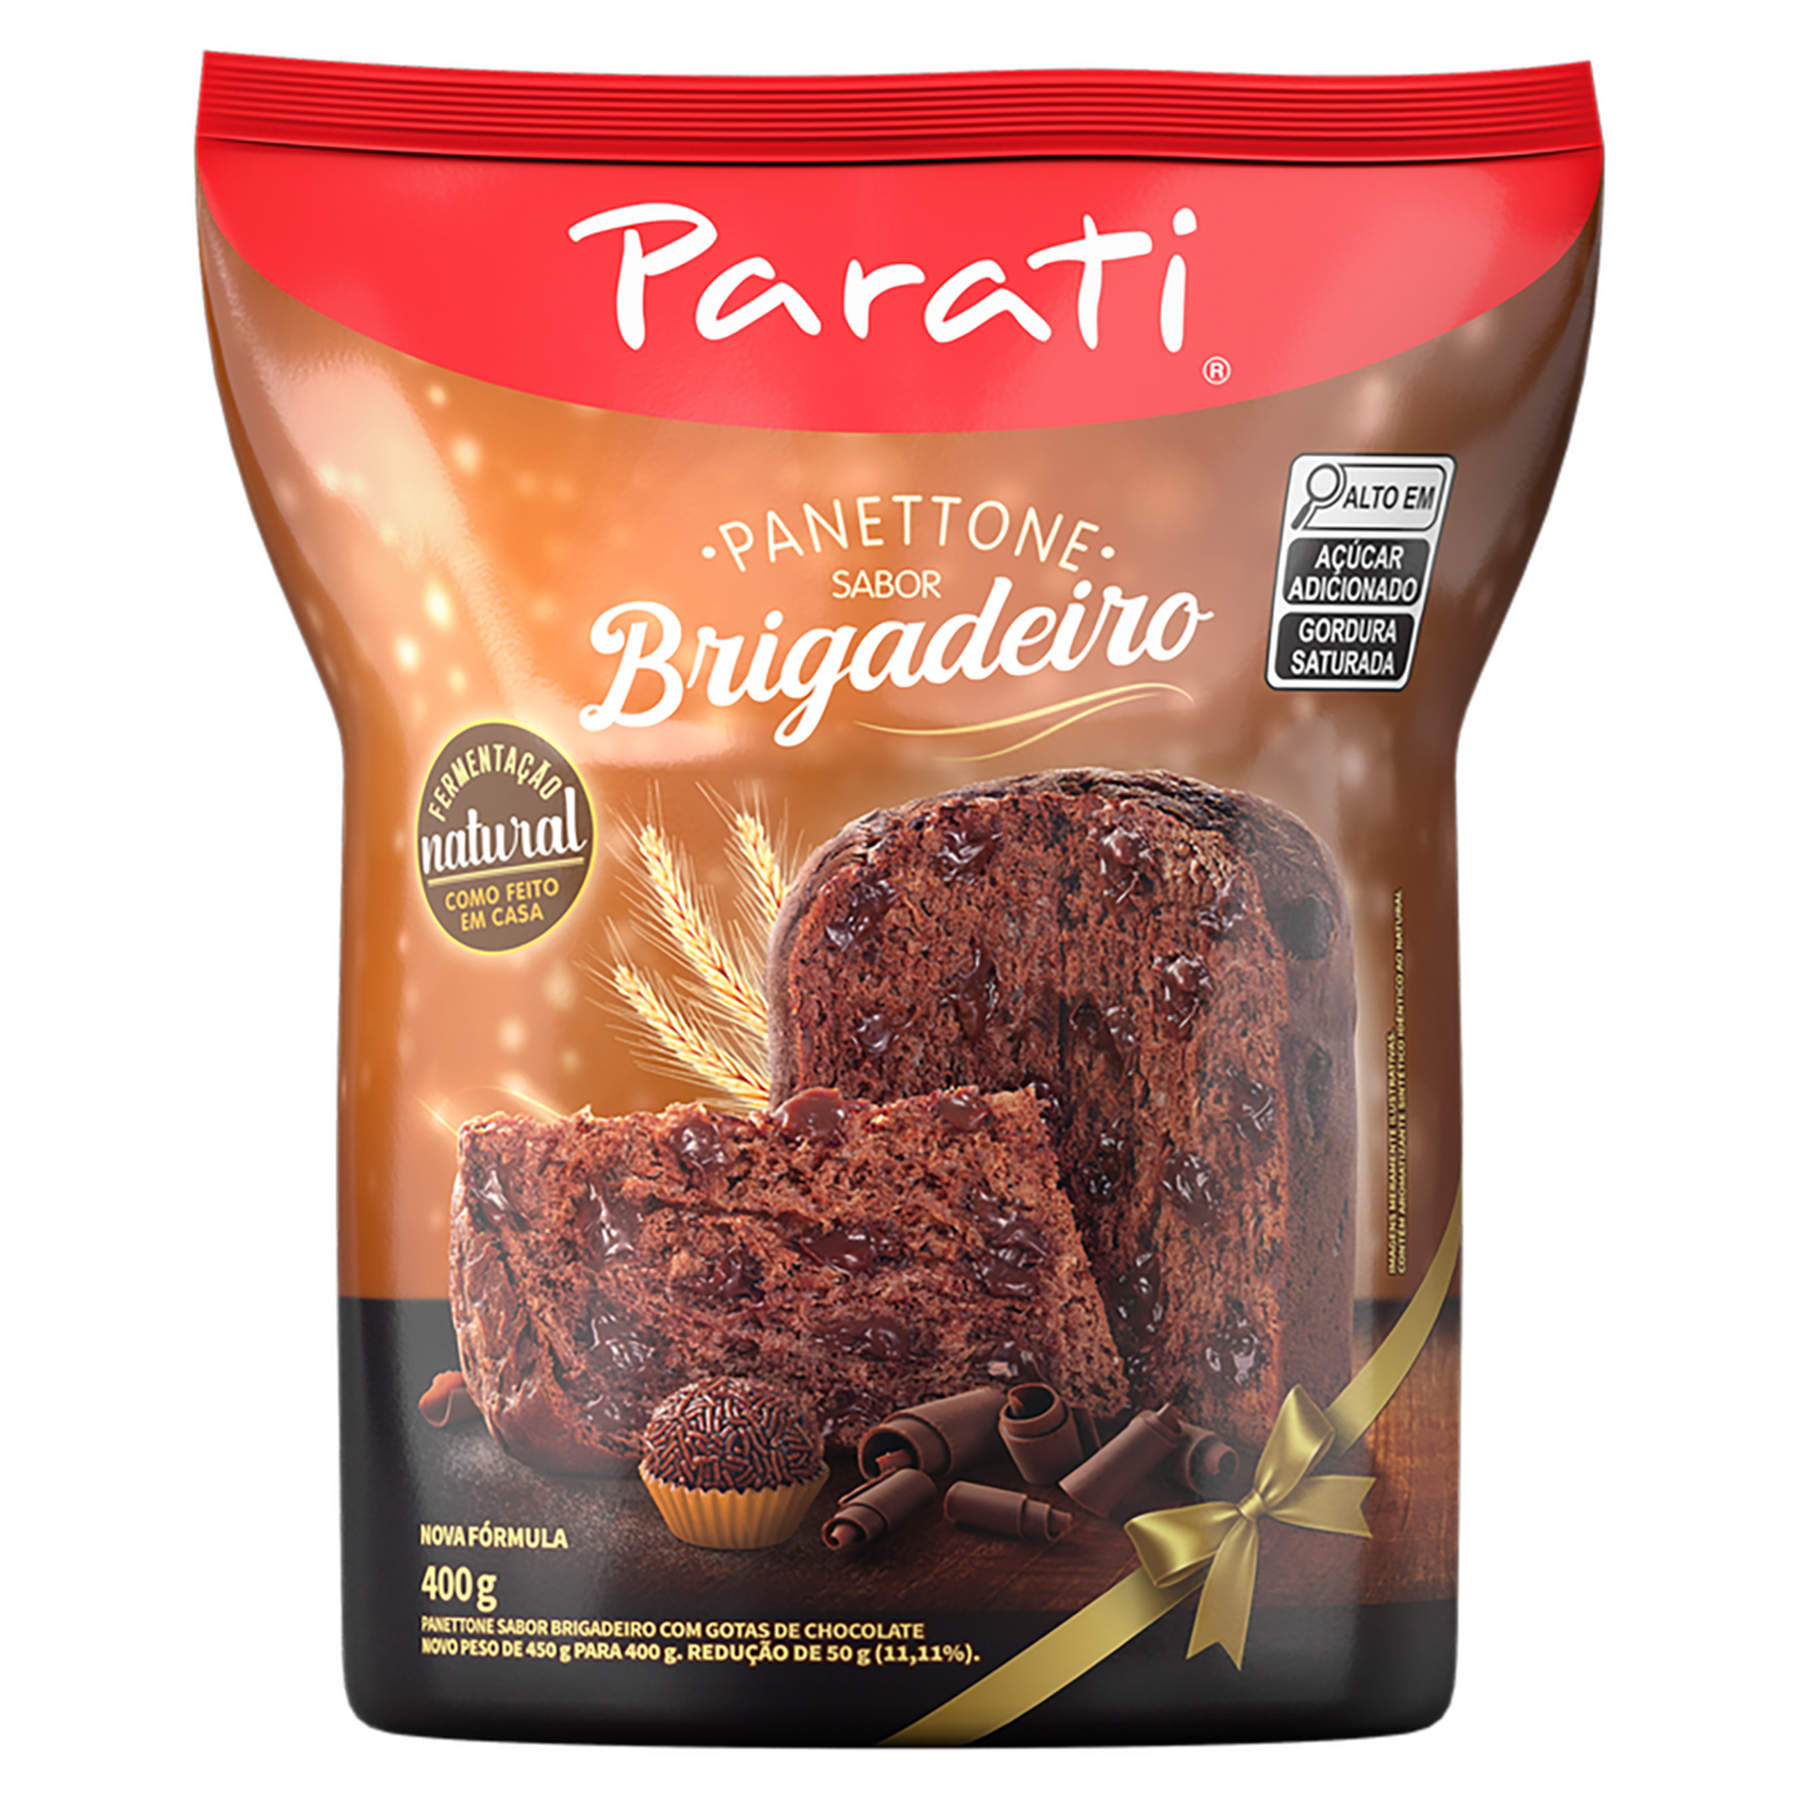 Panettone Brigadeiro com Gotas de Chocolate Parati Pacote 400g